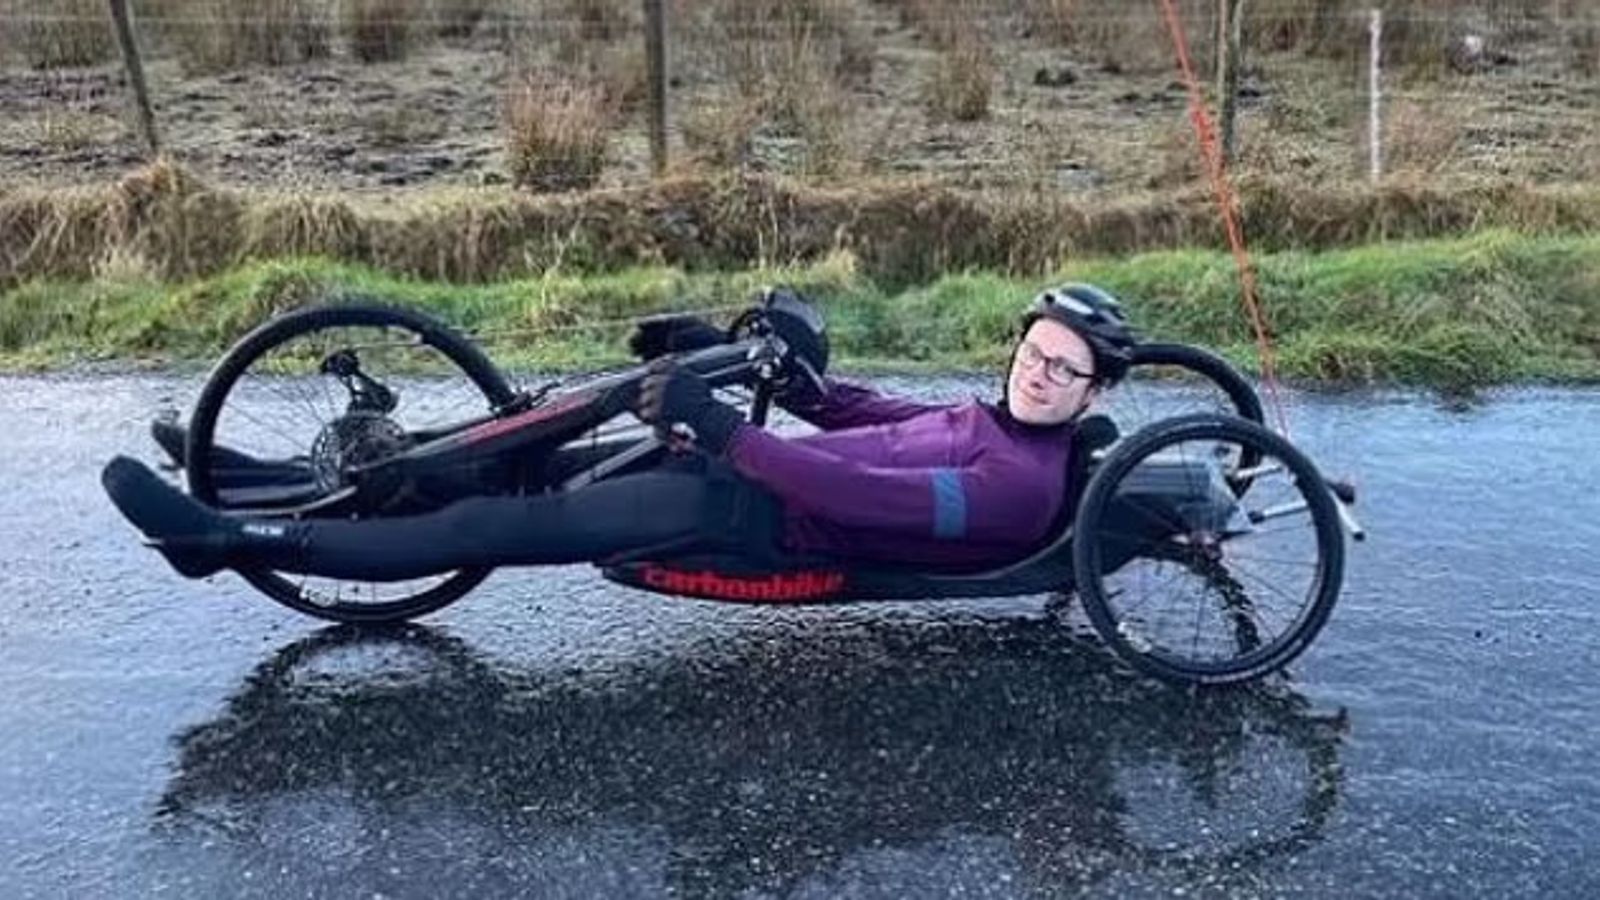 Младши лекар в Шотландия, който търси £10 милиона обезщетение, след като катастрофа с велосипед го остави парализиран